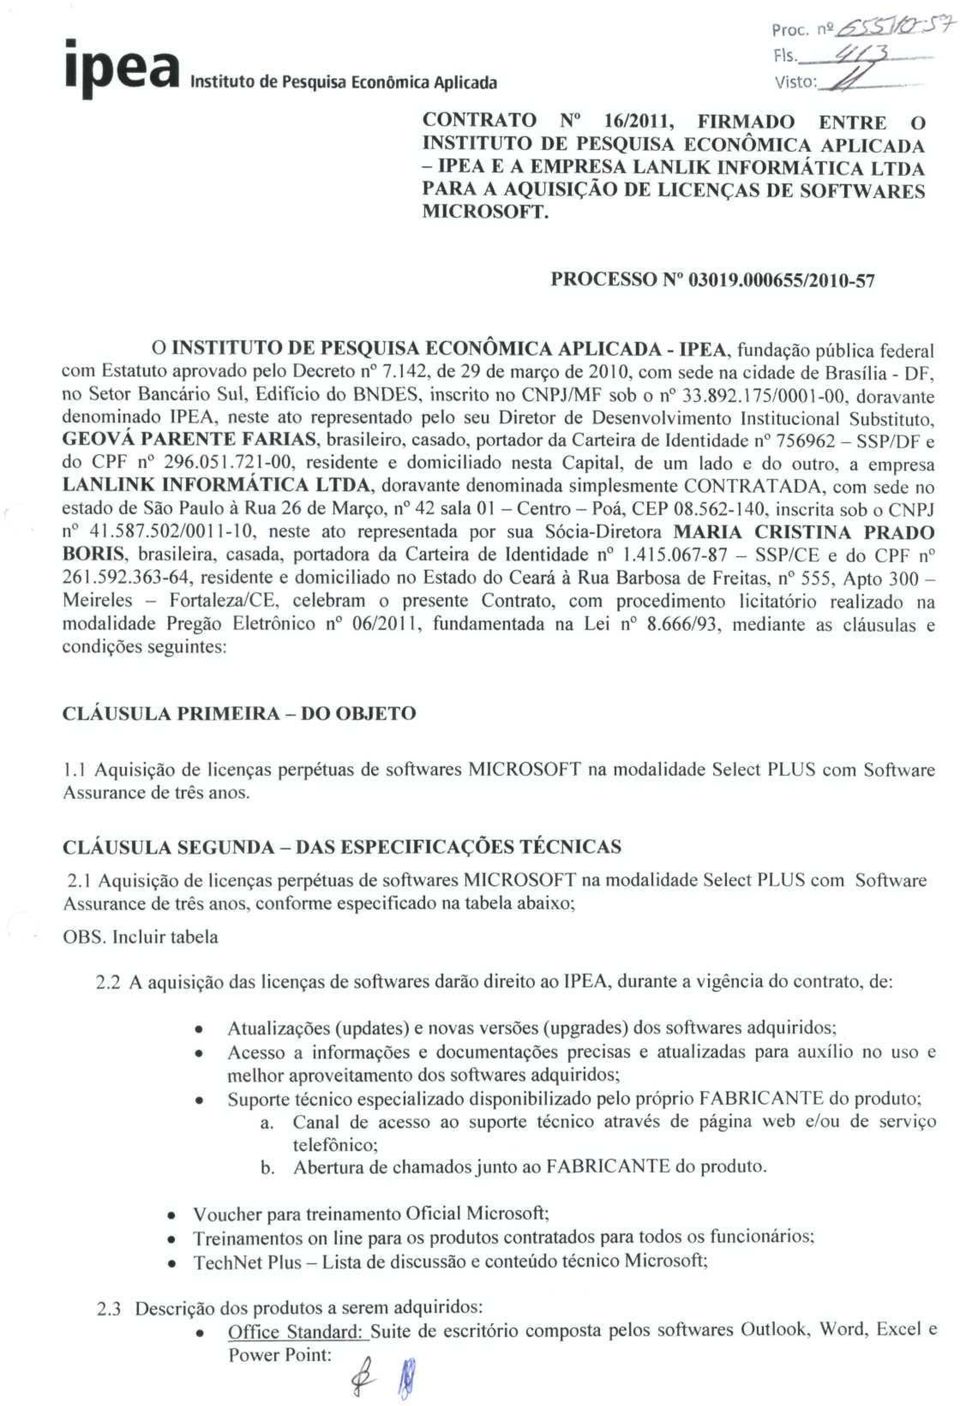 142, de 29 de março de 2010, com sede na cidade de Brasília - DF, no Setor Bancário Sul, Edifício do BNDES, inscrito no CNPJ/MF sob o n 33.892.